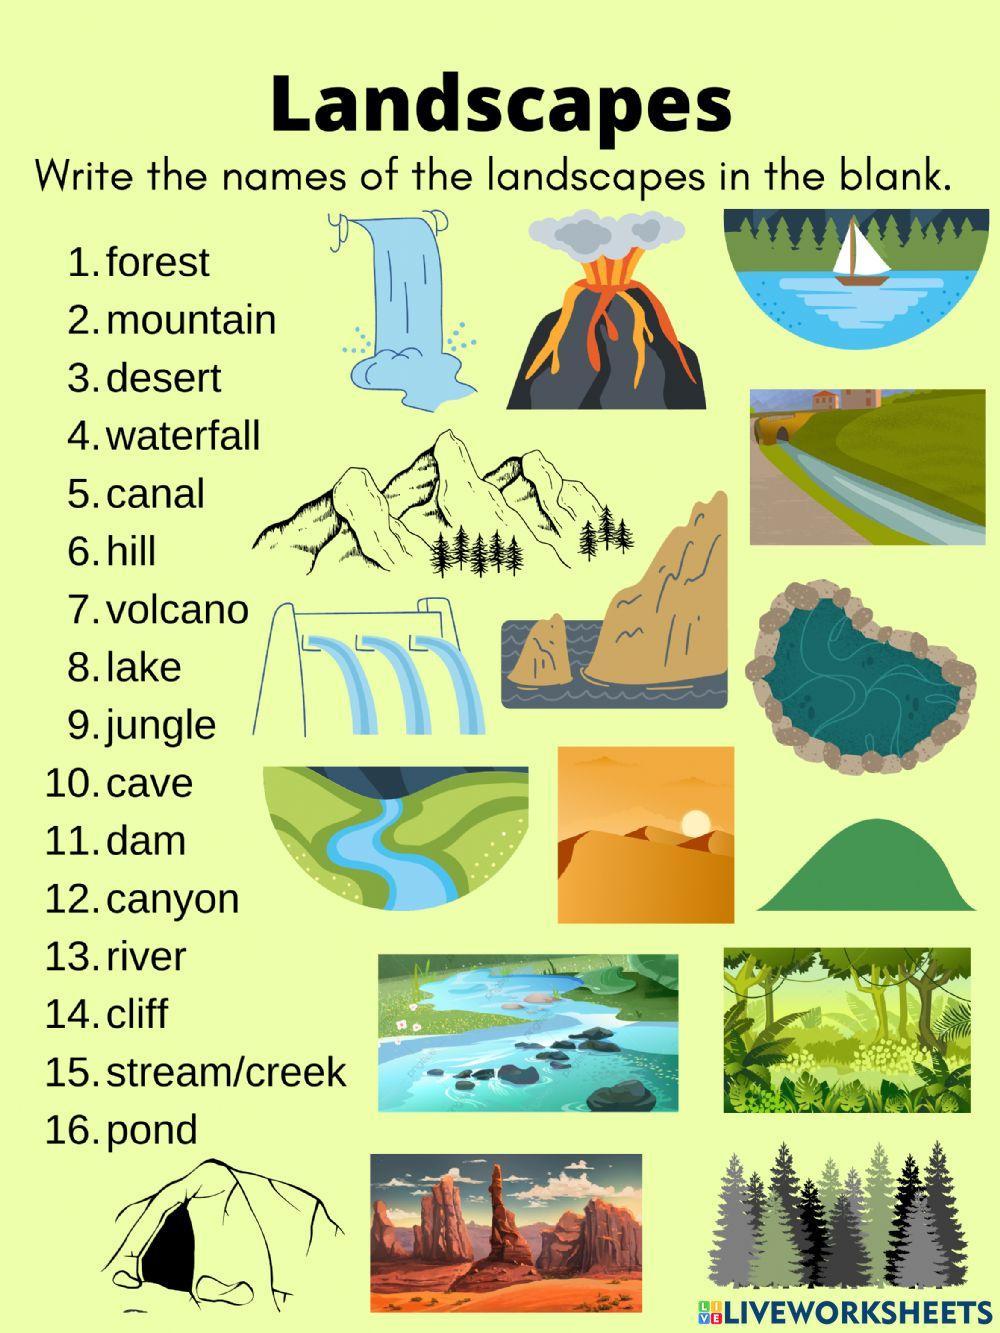 Landscape Vocabulary